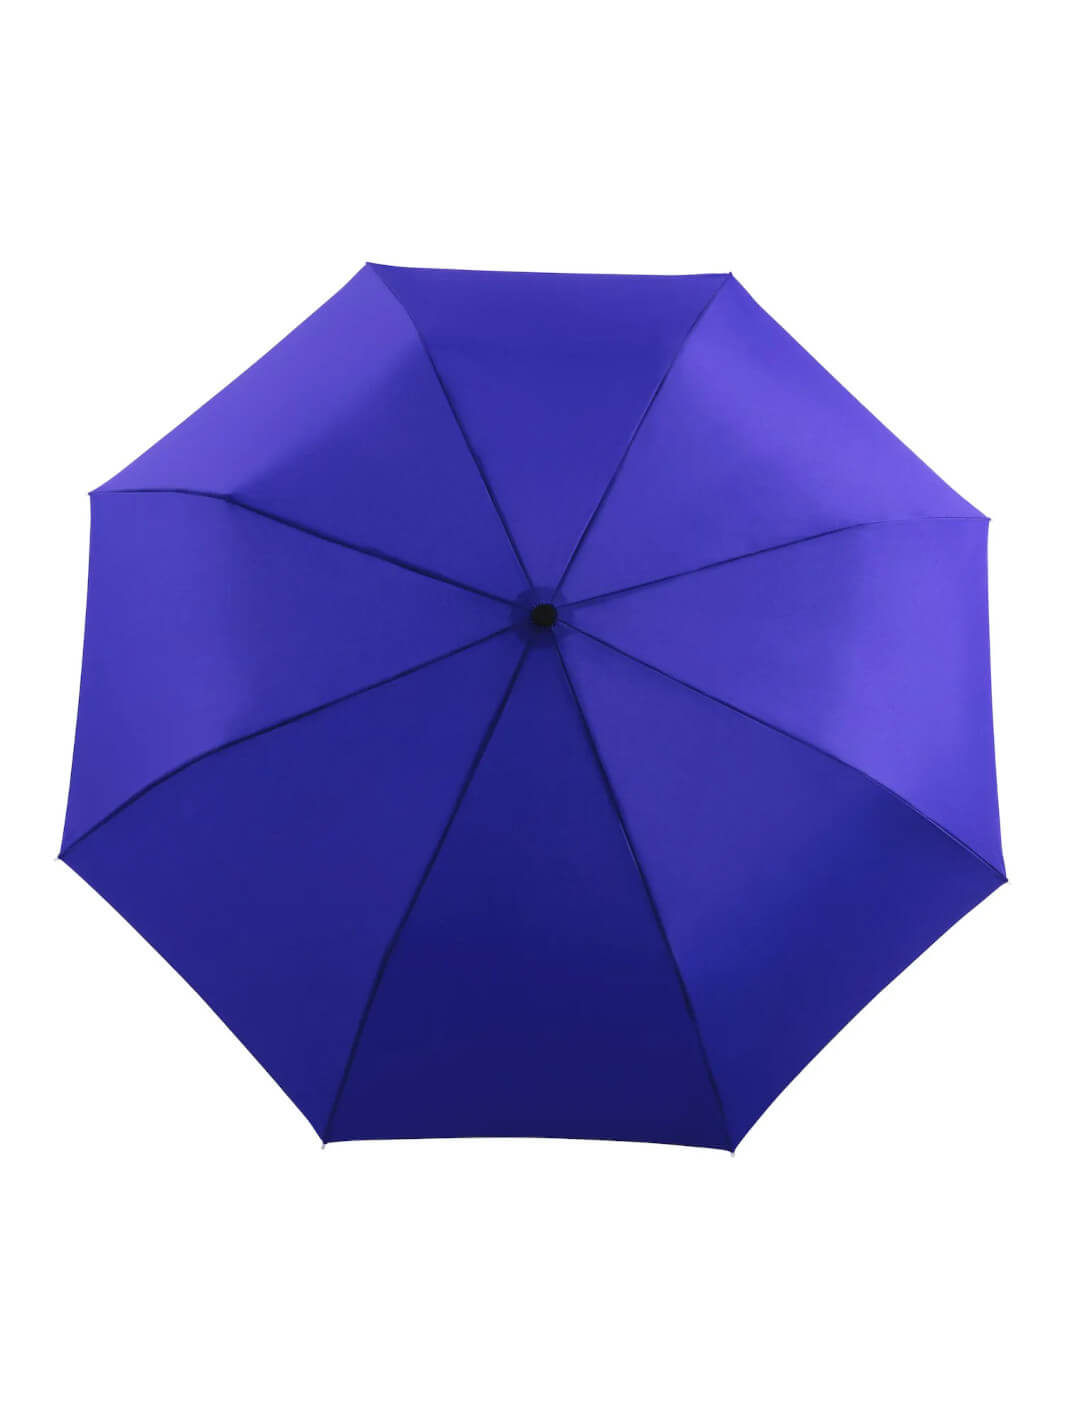 blauer kompakter Regenschirm handgemacht